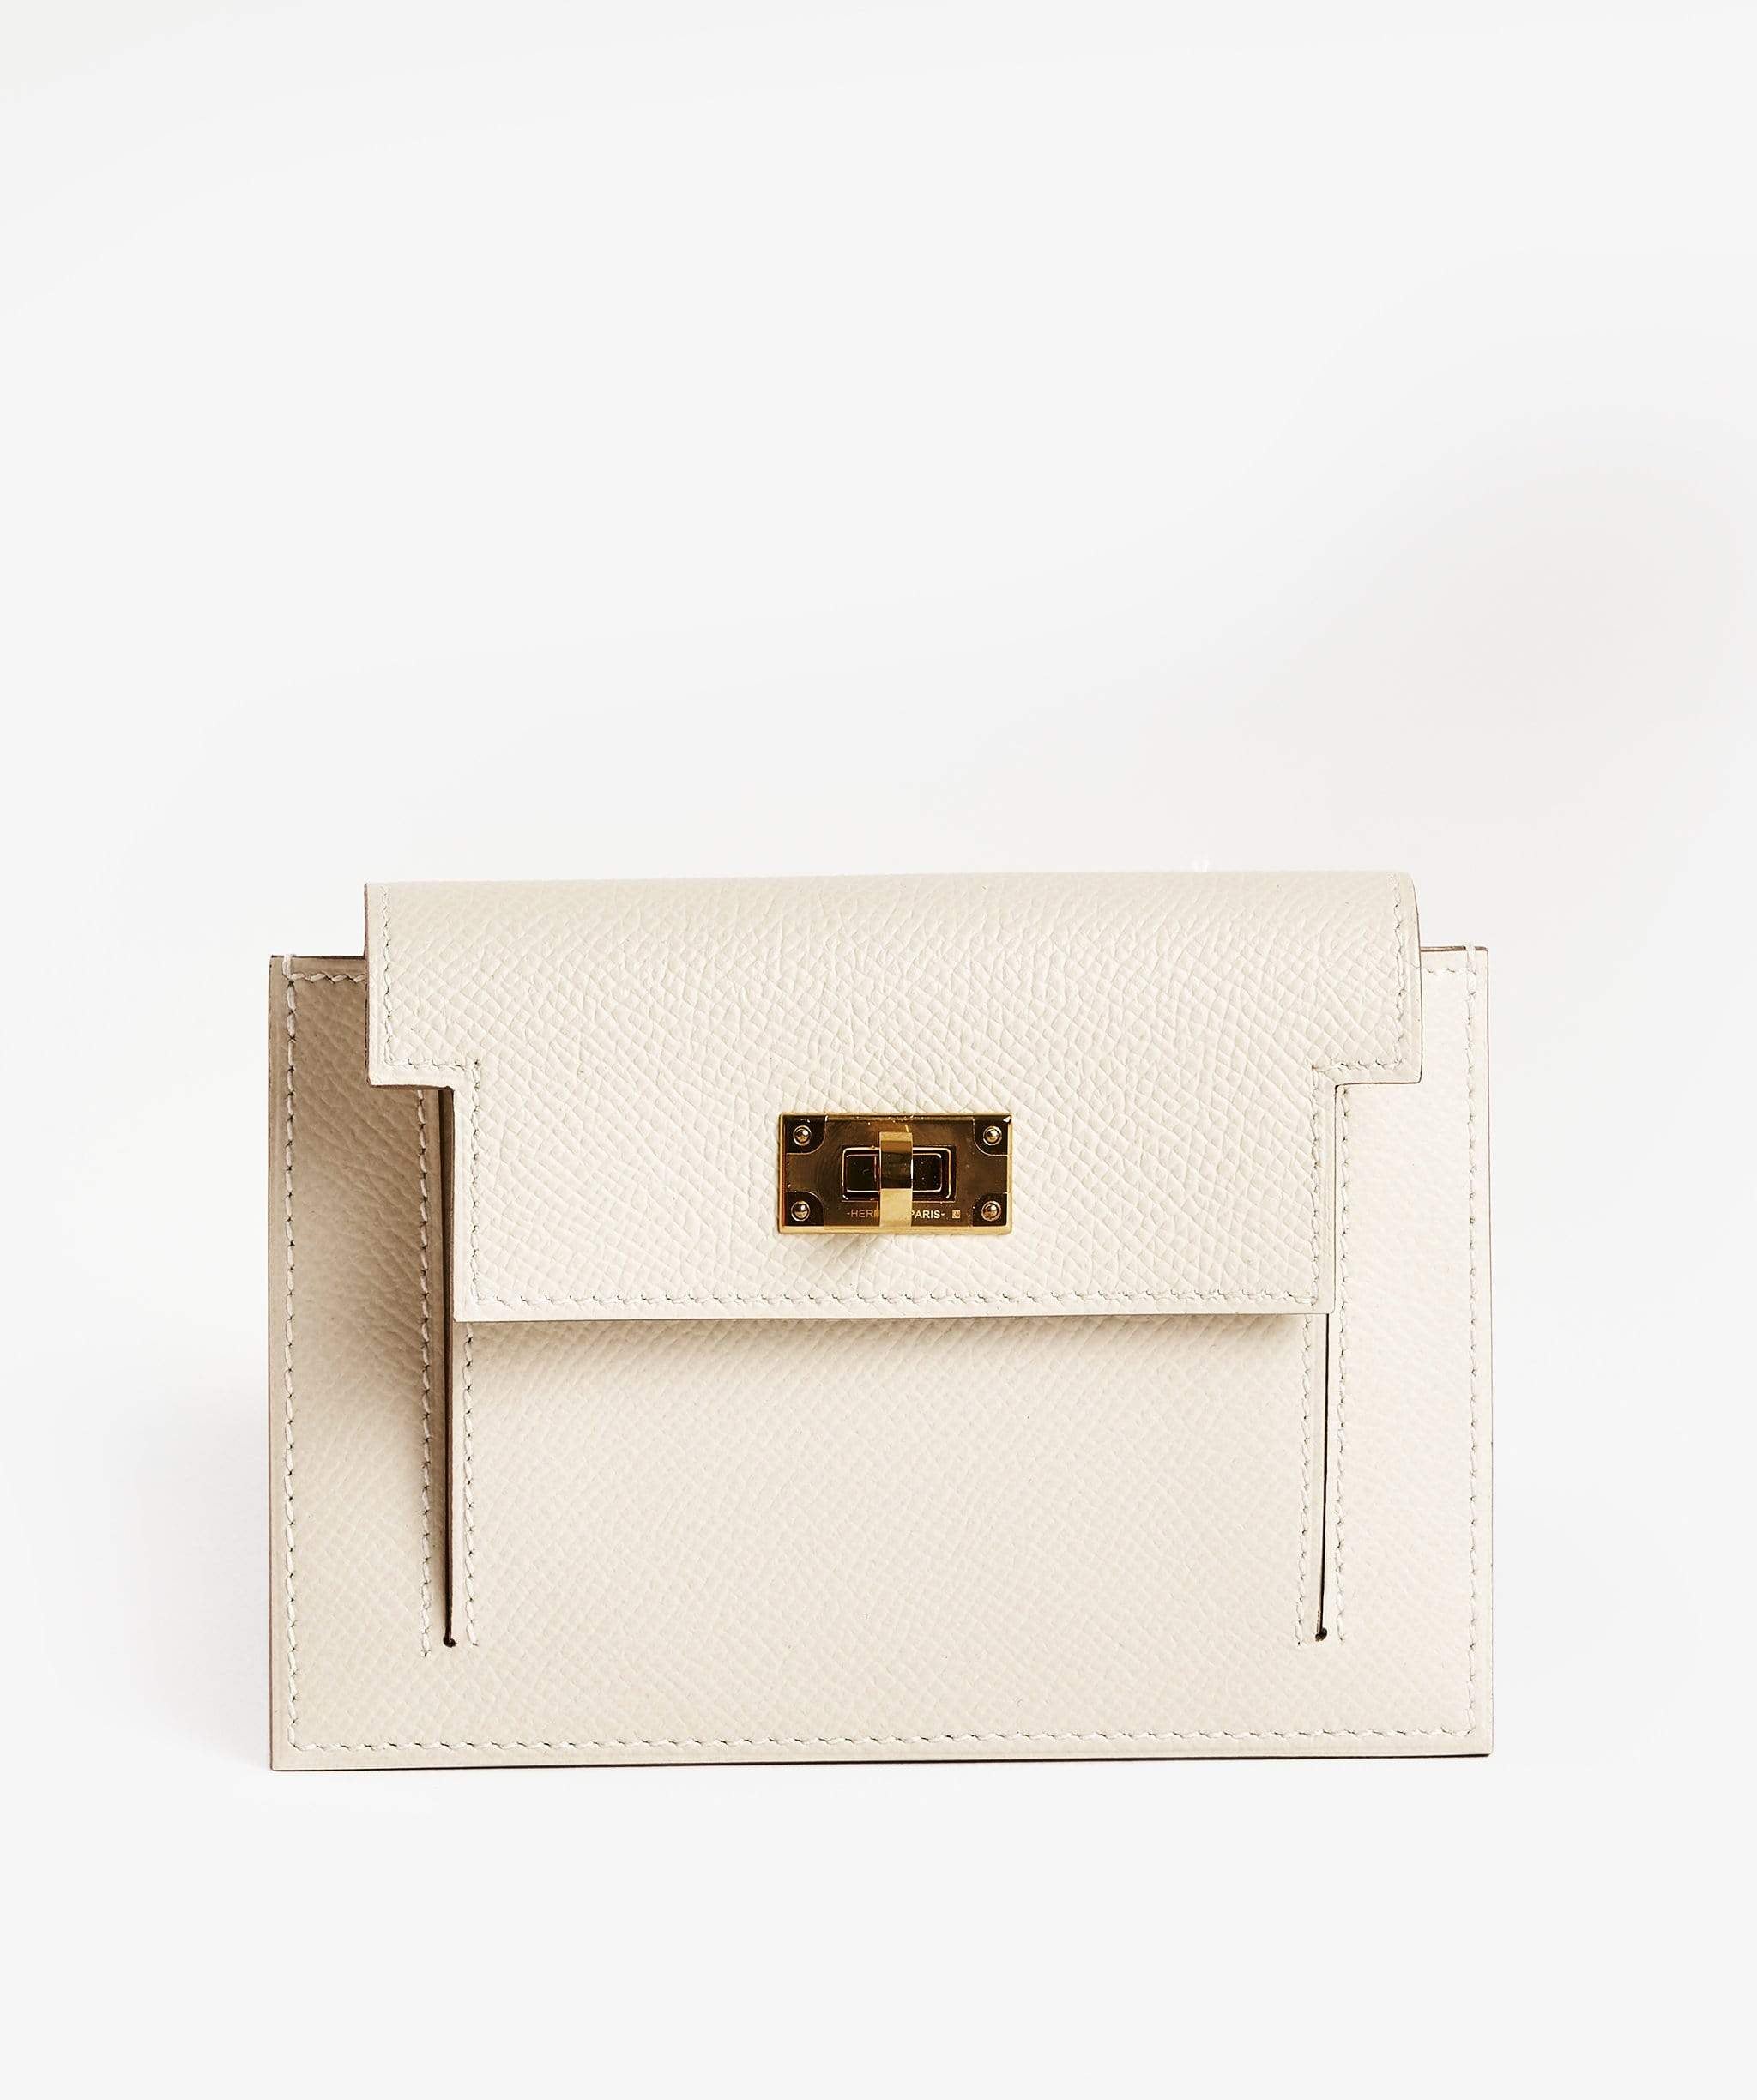 Hermès Hermes Craie compact wallet with GHW